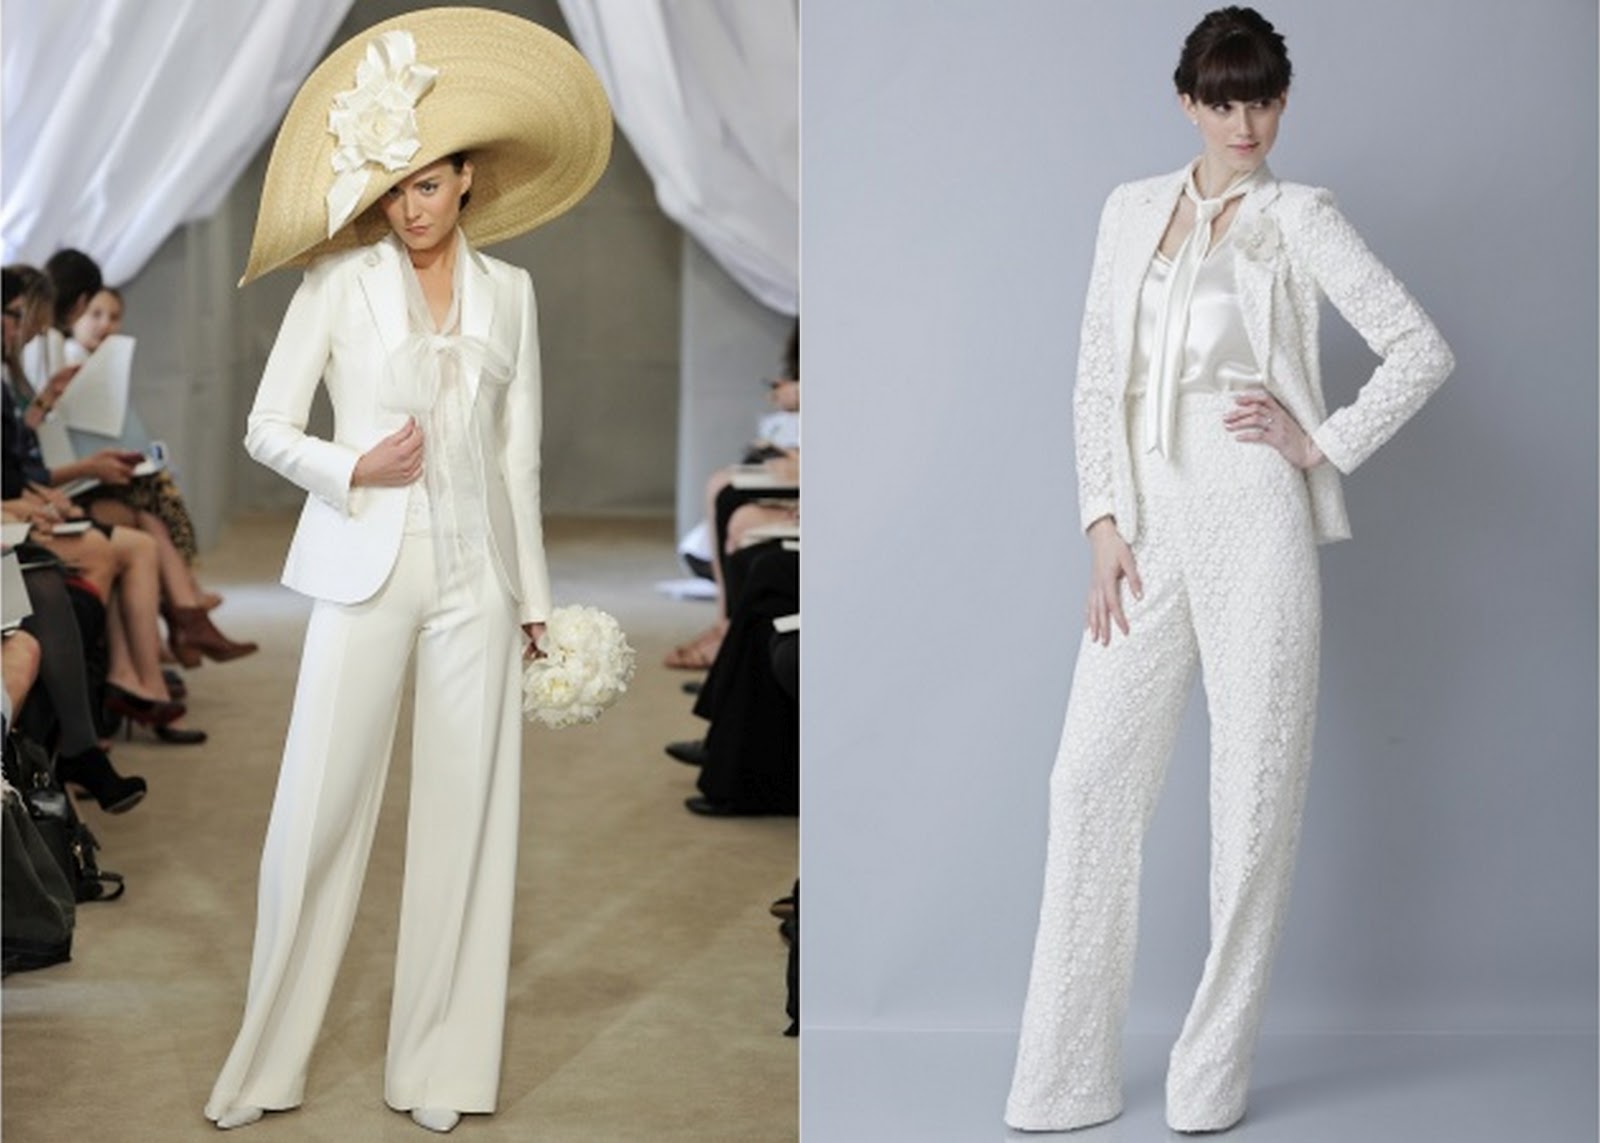 de Lovely Affair: Top 10 Wedding Dress Trends for 2013 ...